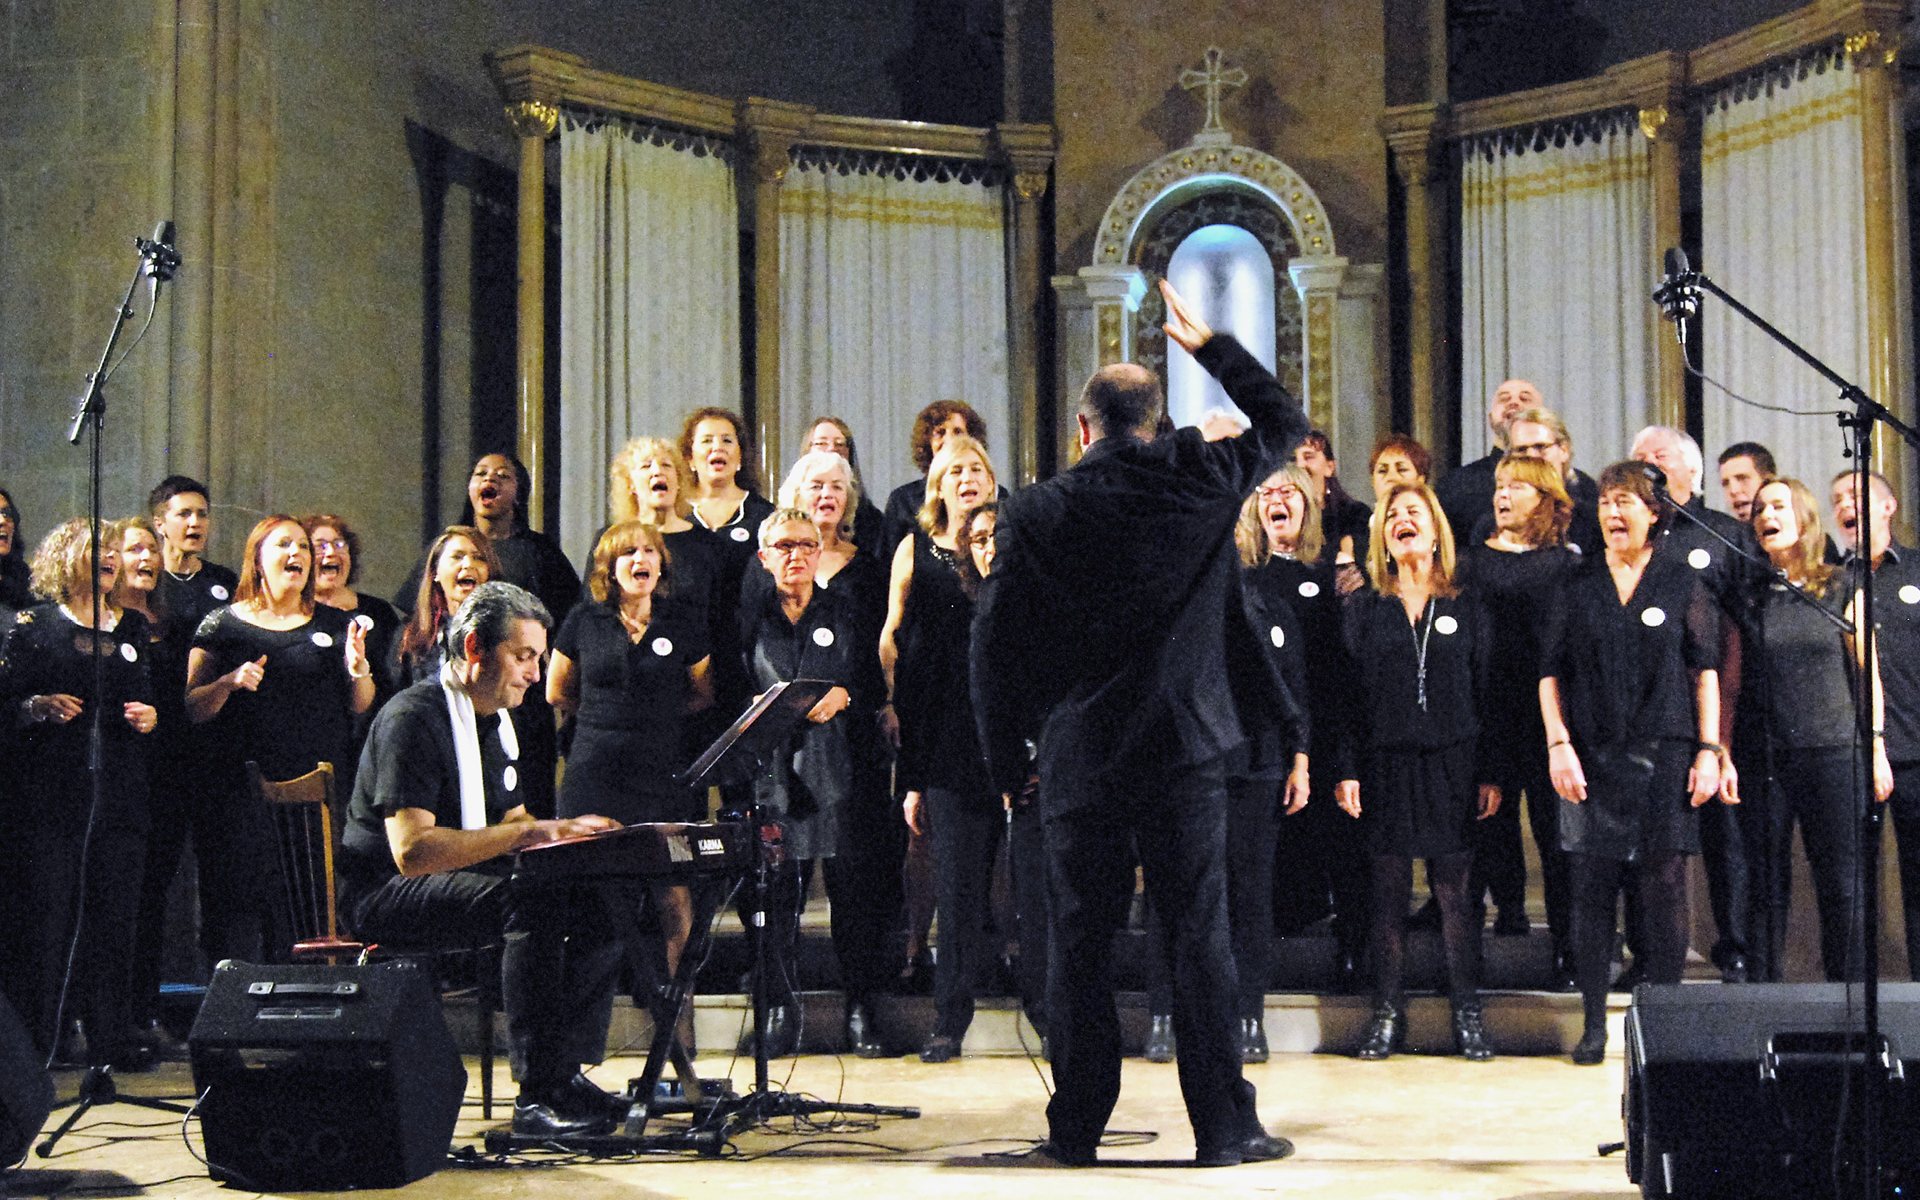 Concert de Gospel a Peralada a càrrec  del Cor Gospel Girona